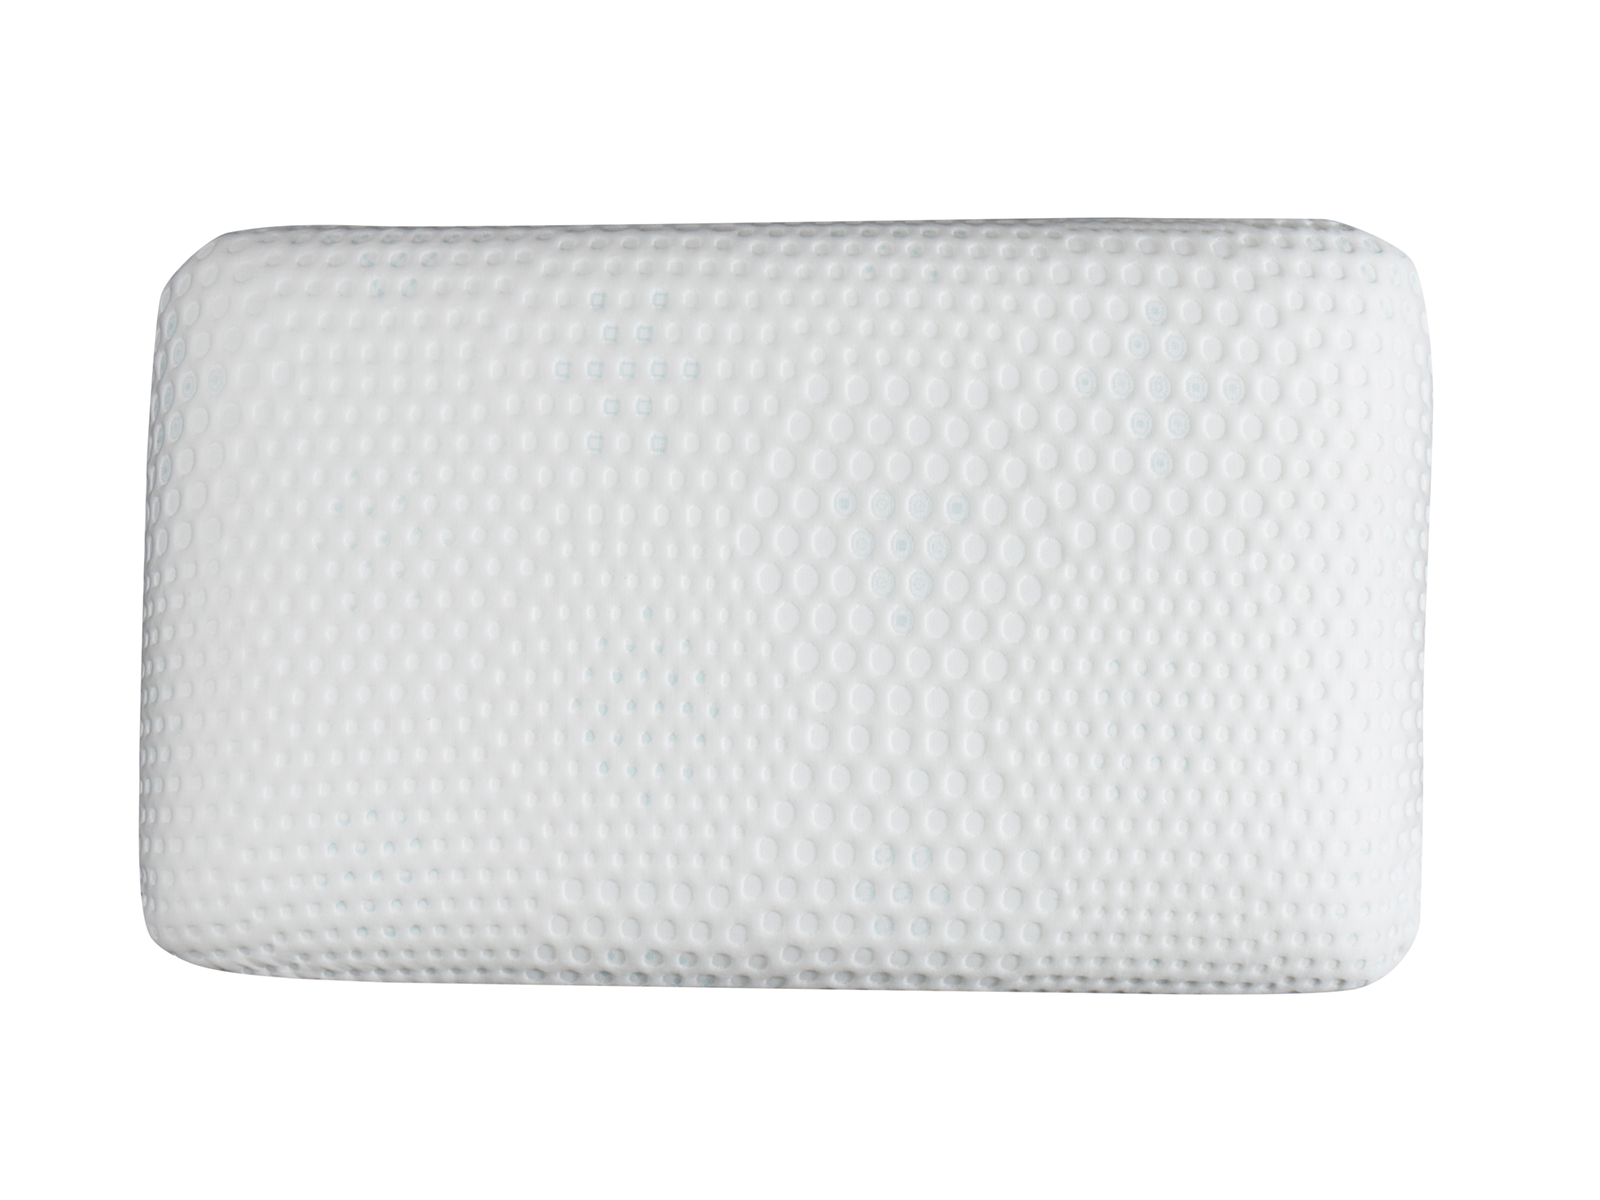 Coolist Silver Medium-Firm Support Pillow